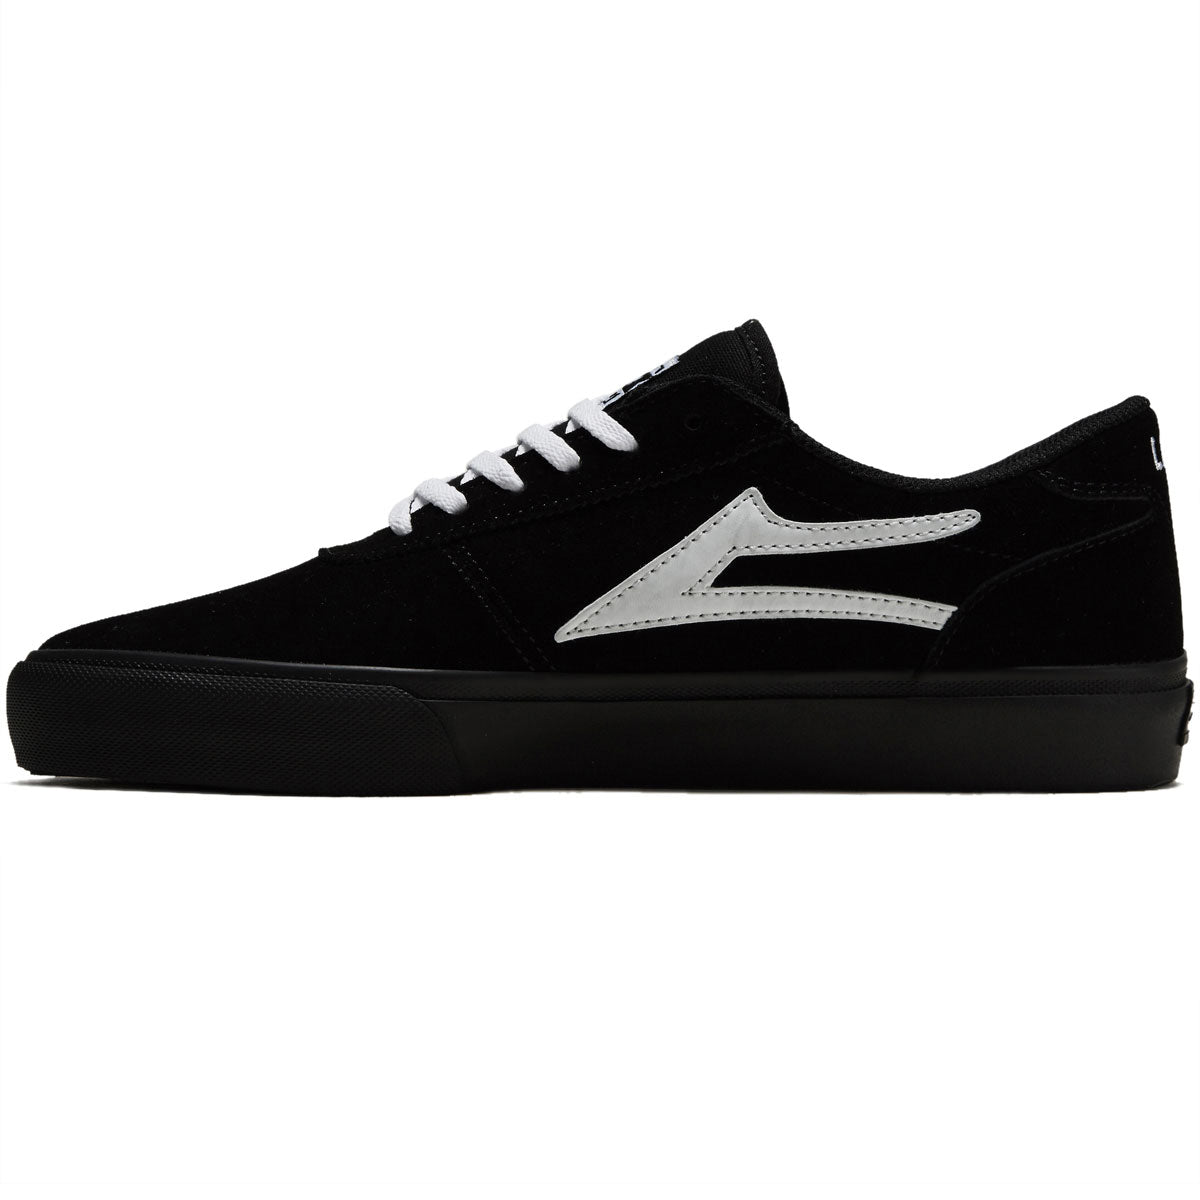 Lakai Manchester Shoes - Black/White image 2